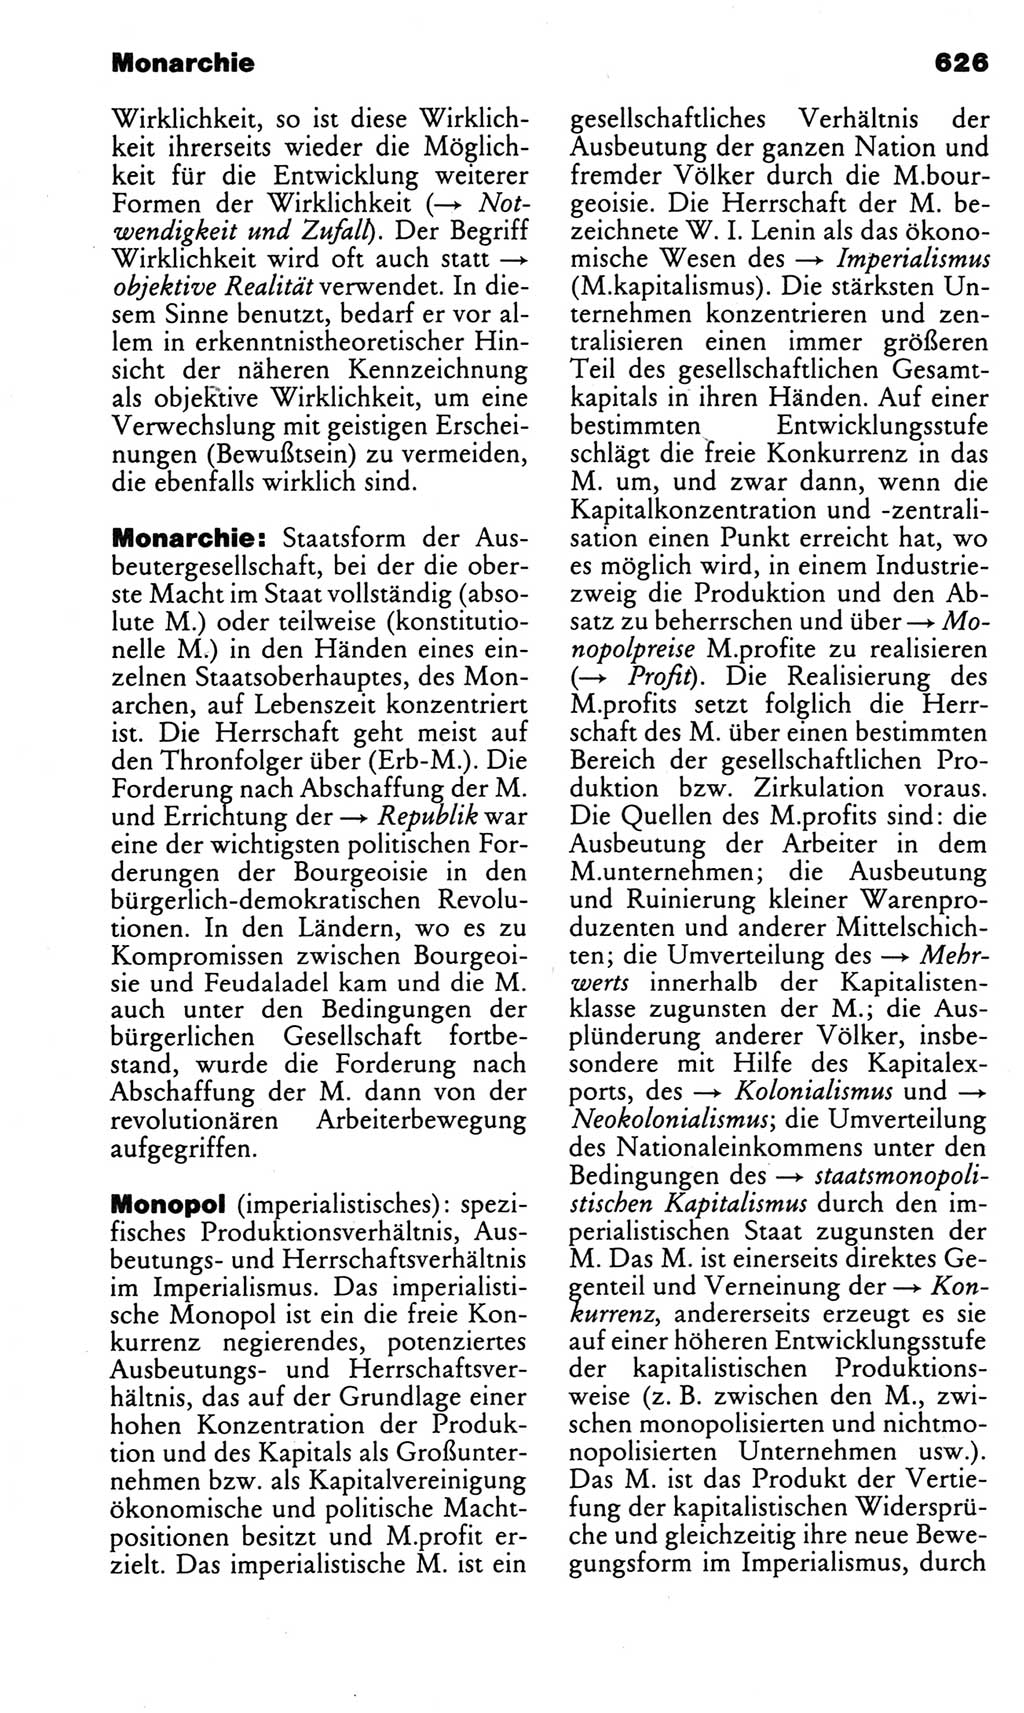 Kleines politisches Wörterbuch [Deutsche Demokratische Republik (DDR)] 1983, Seite 626 (Kl. pol. Wb. DDR 1983, S. 626)